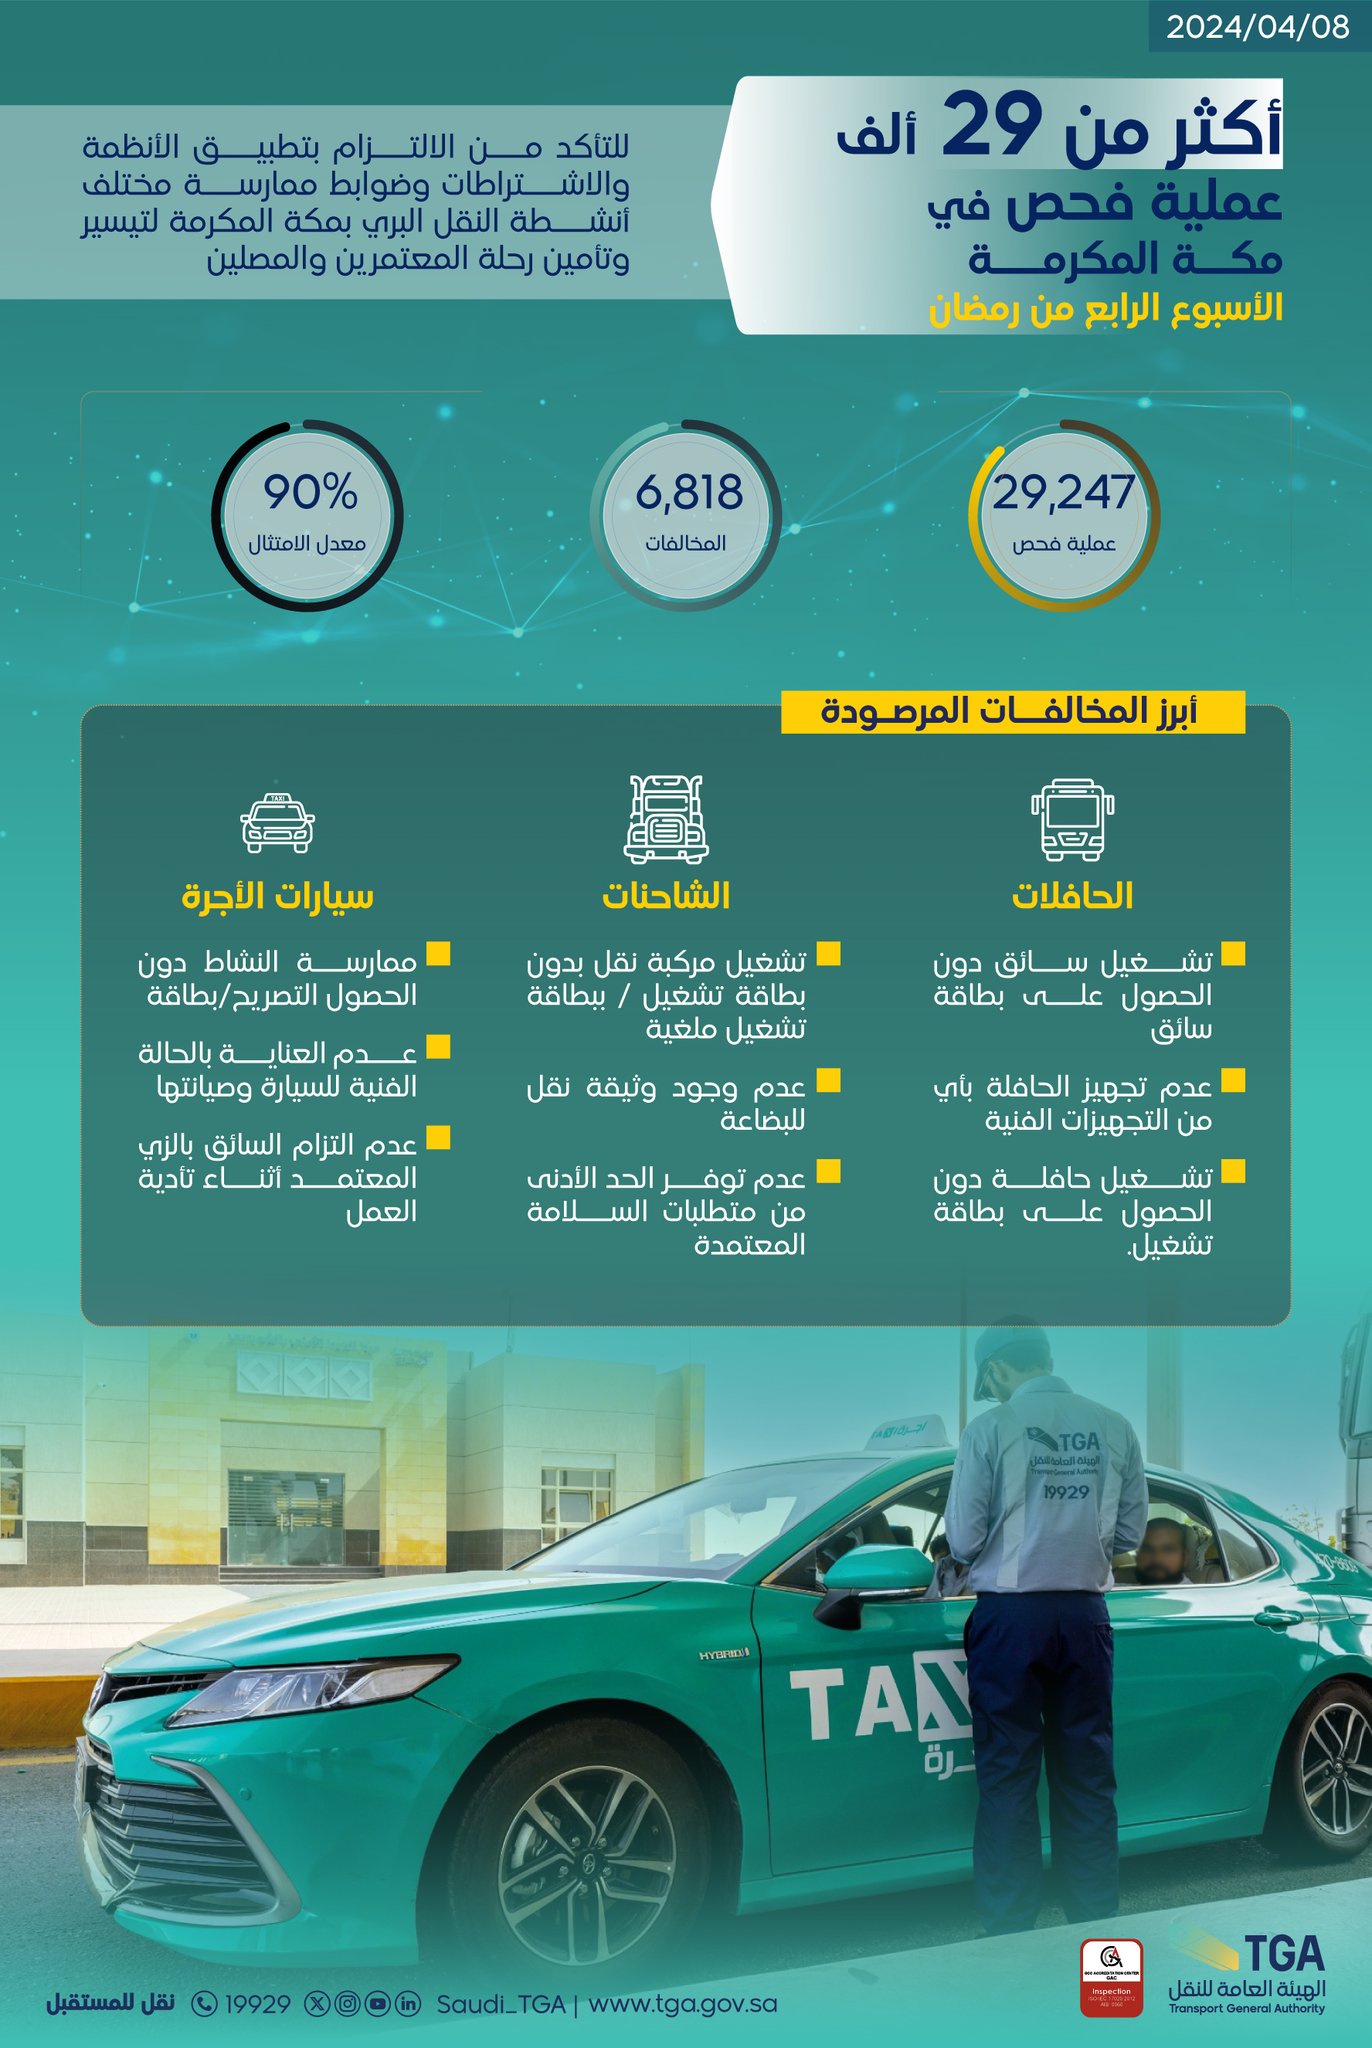 هيئة النقل تنفذ أكثر من 37 ألف عملية فحص في مكة المكرمة والمدينة المنورة خلال الأسبوع الرابع من رمضان